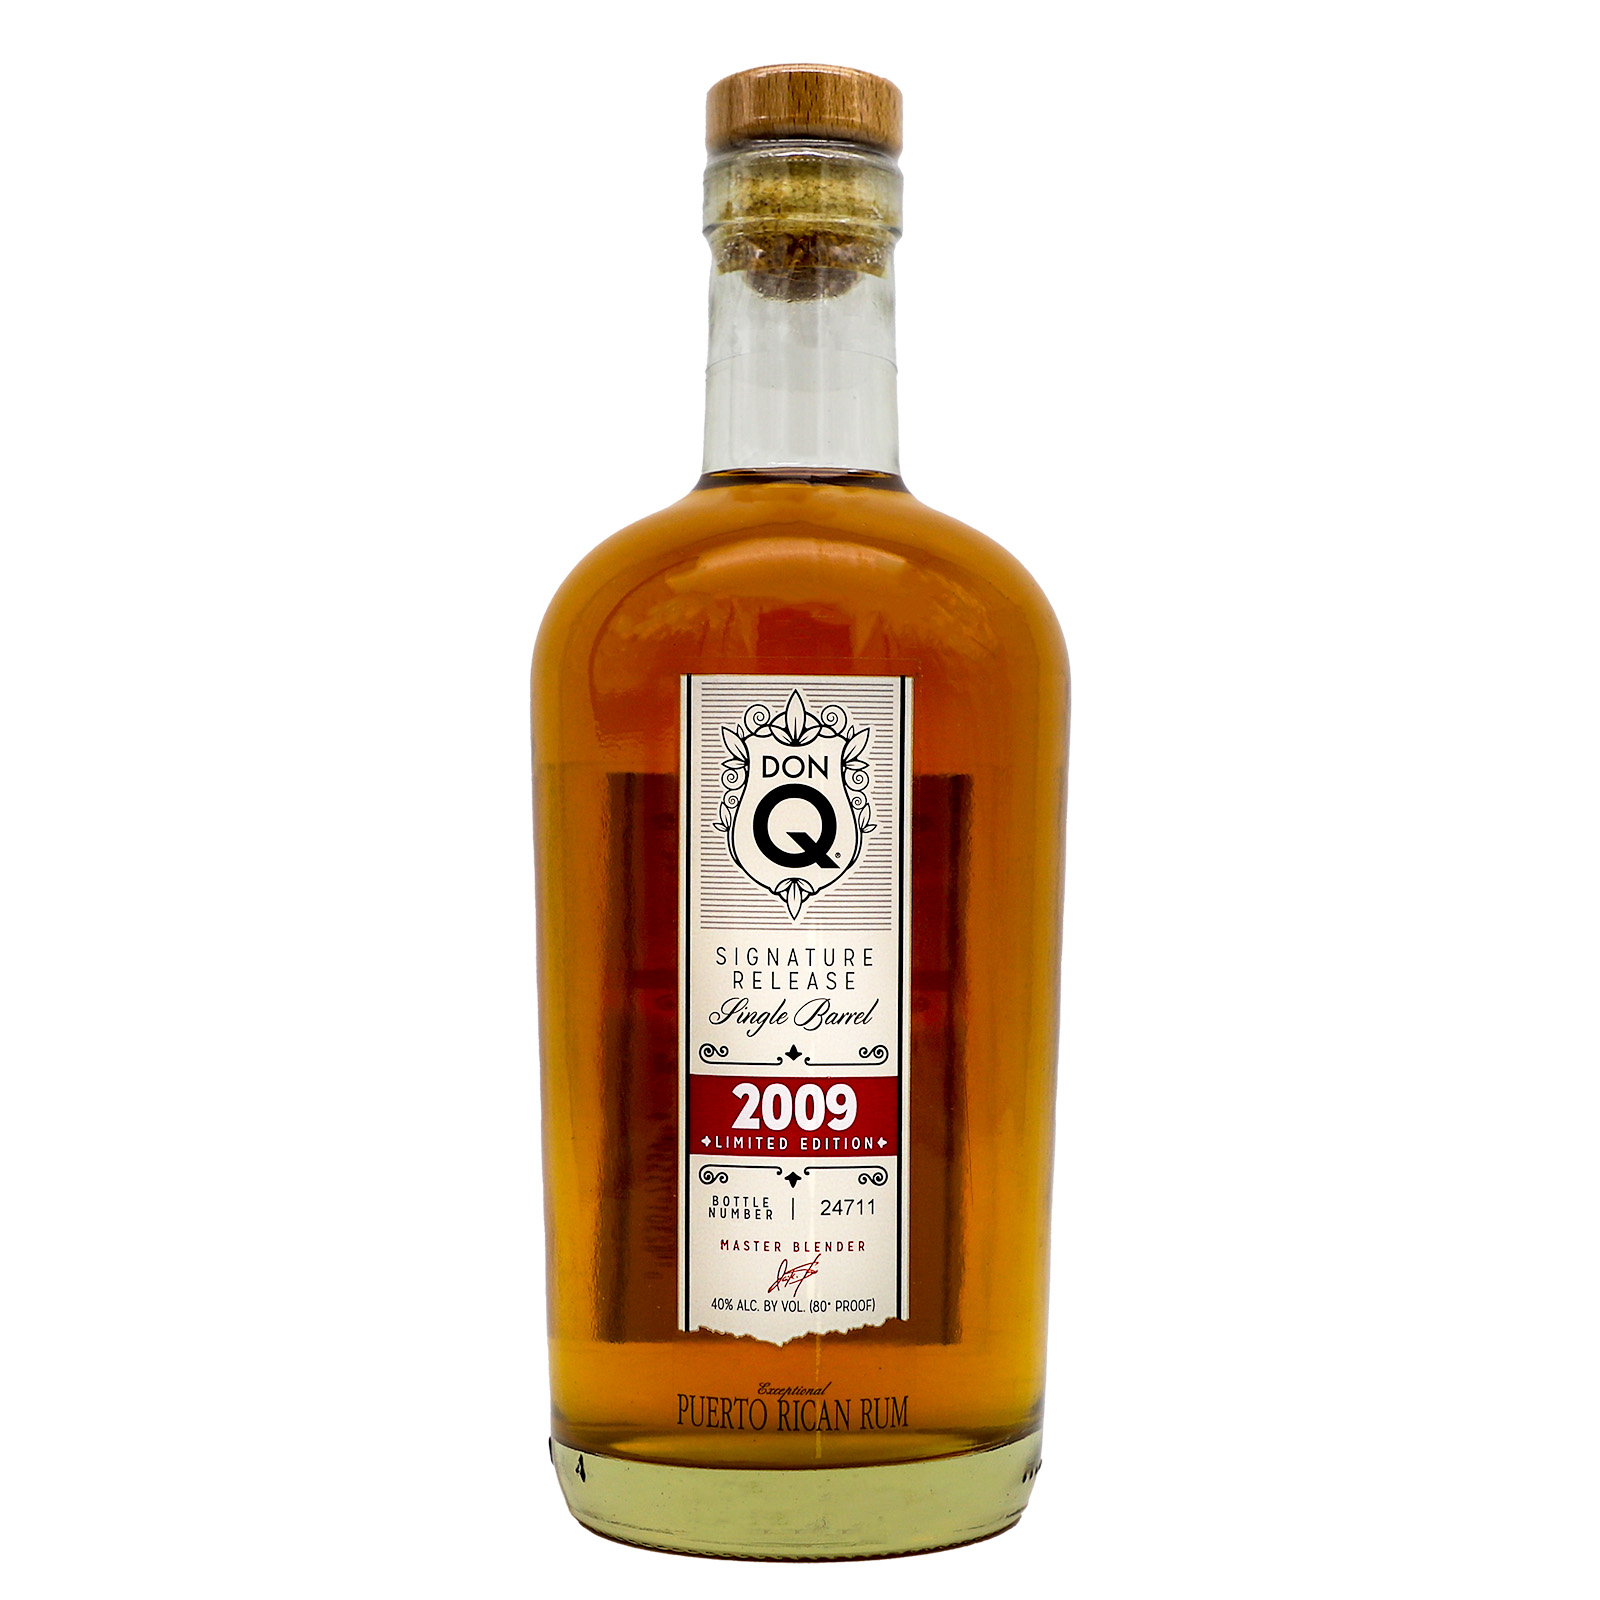 Don Q Signature Release Single Barrel 2009 Premium Aged Rum